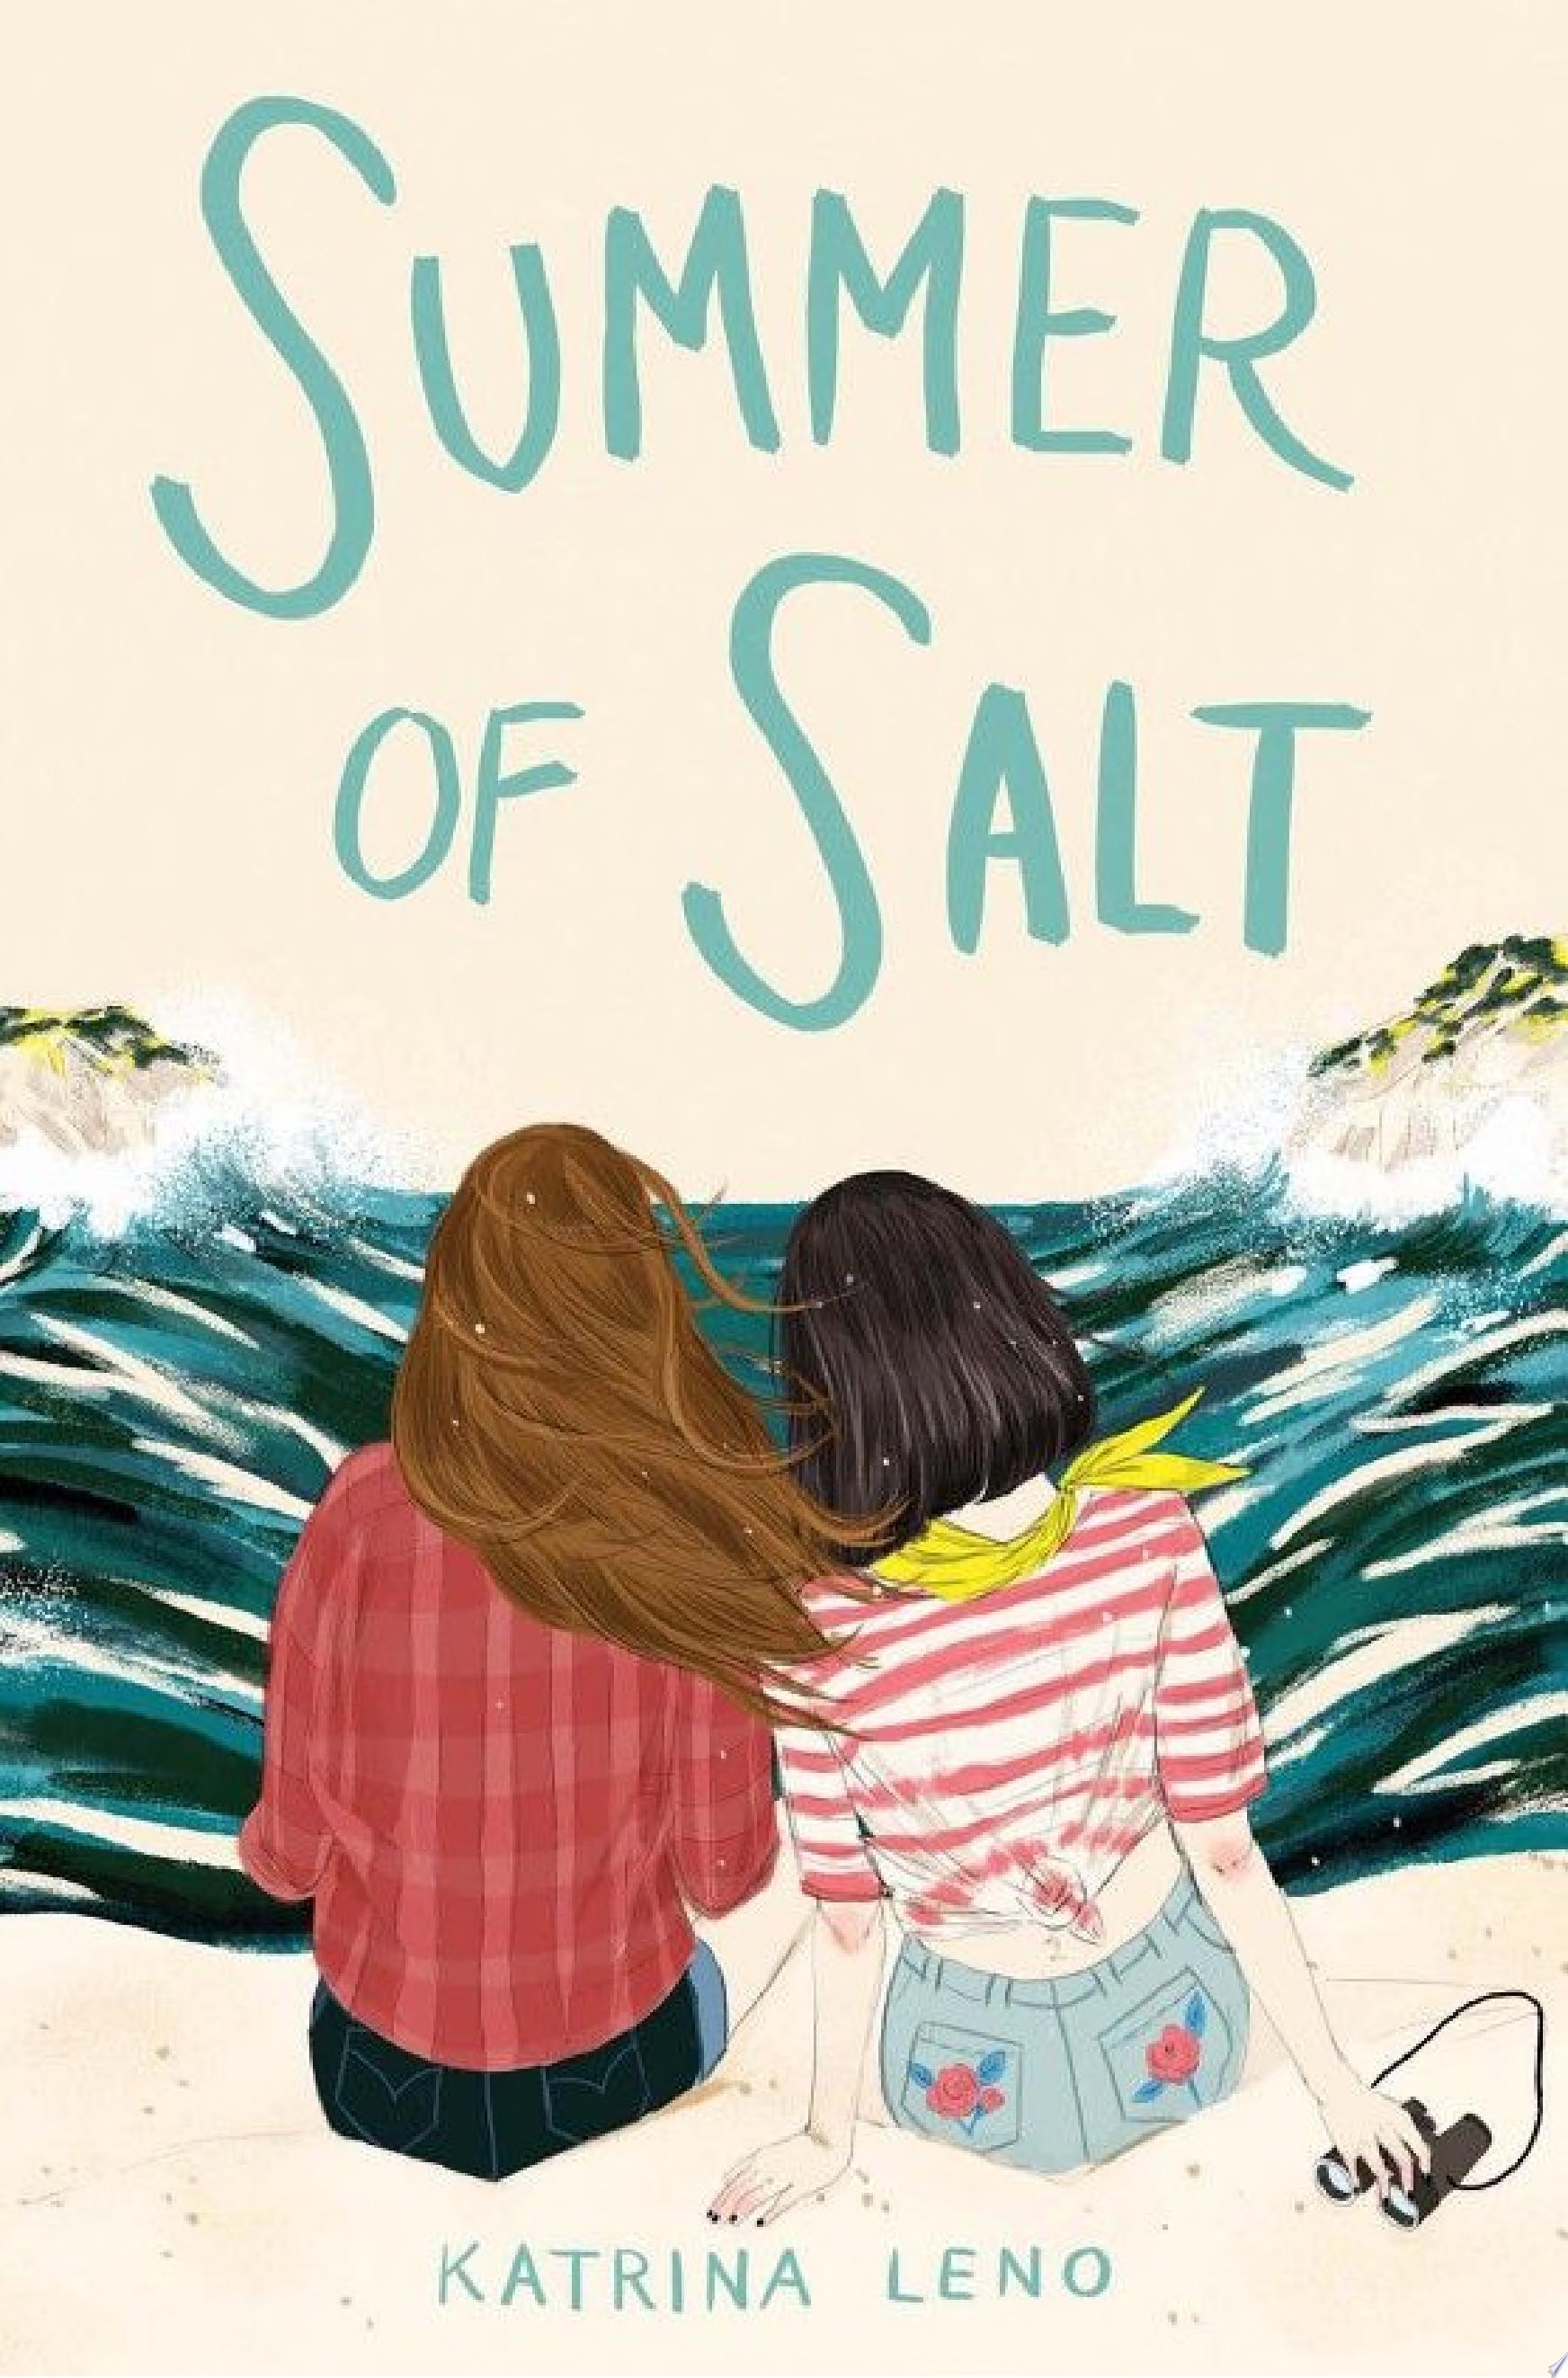 Image for "Summer of Salt"